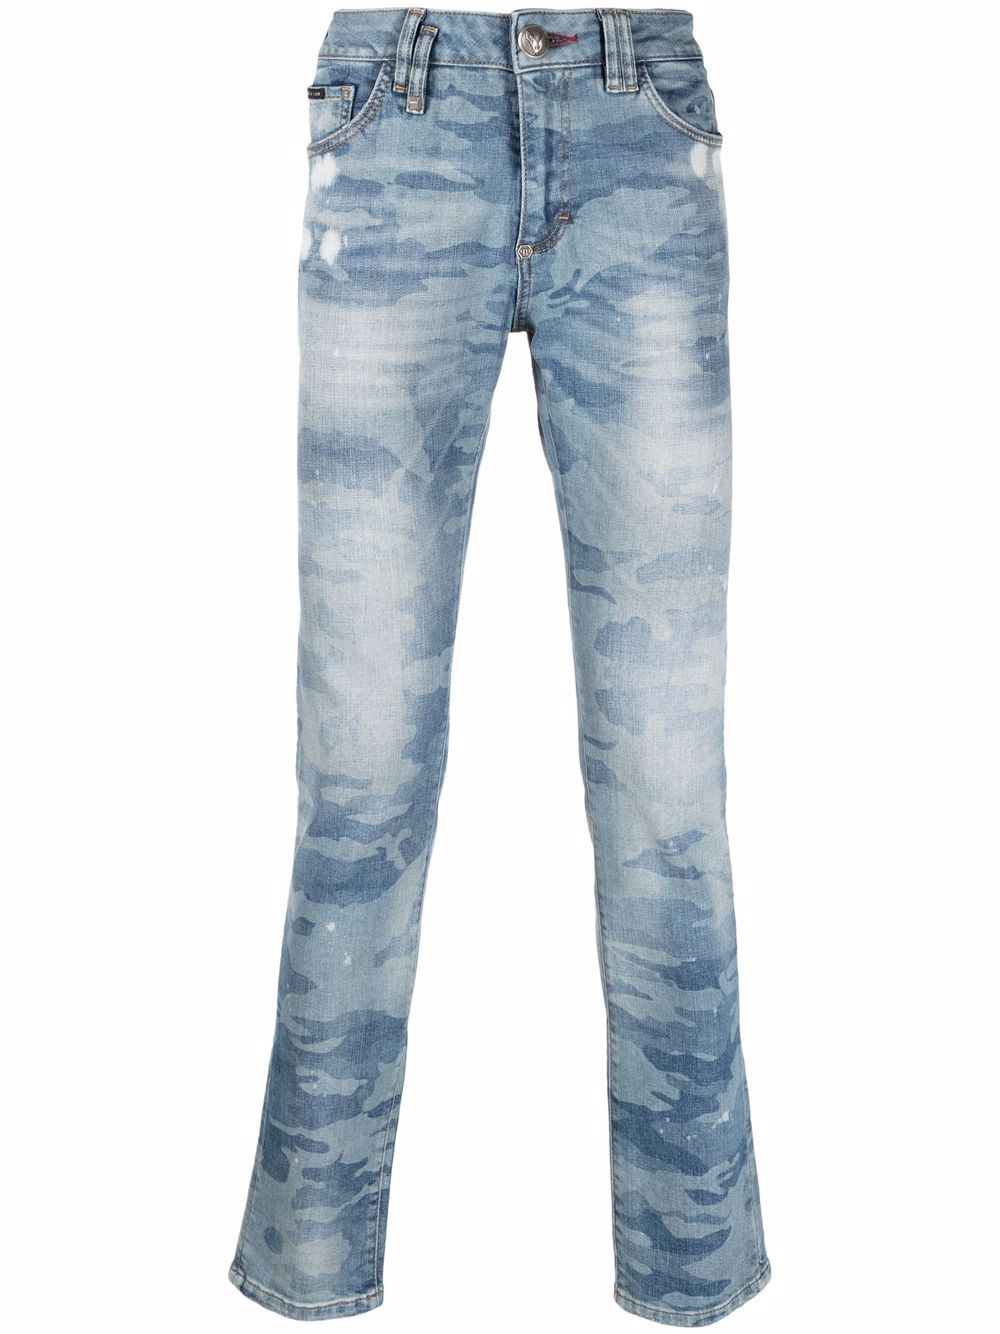 фото Philipp plein узкие джинсы с камуфляжным принтом